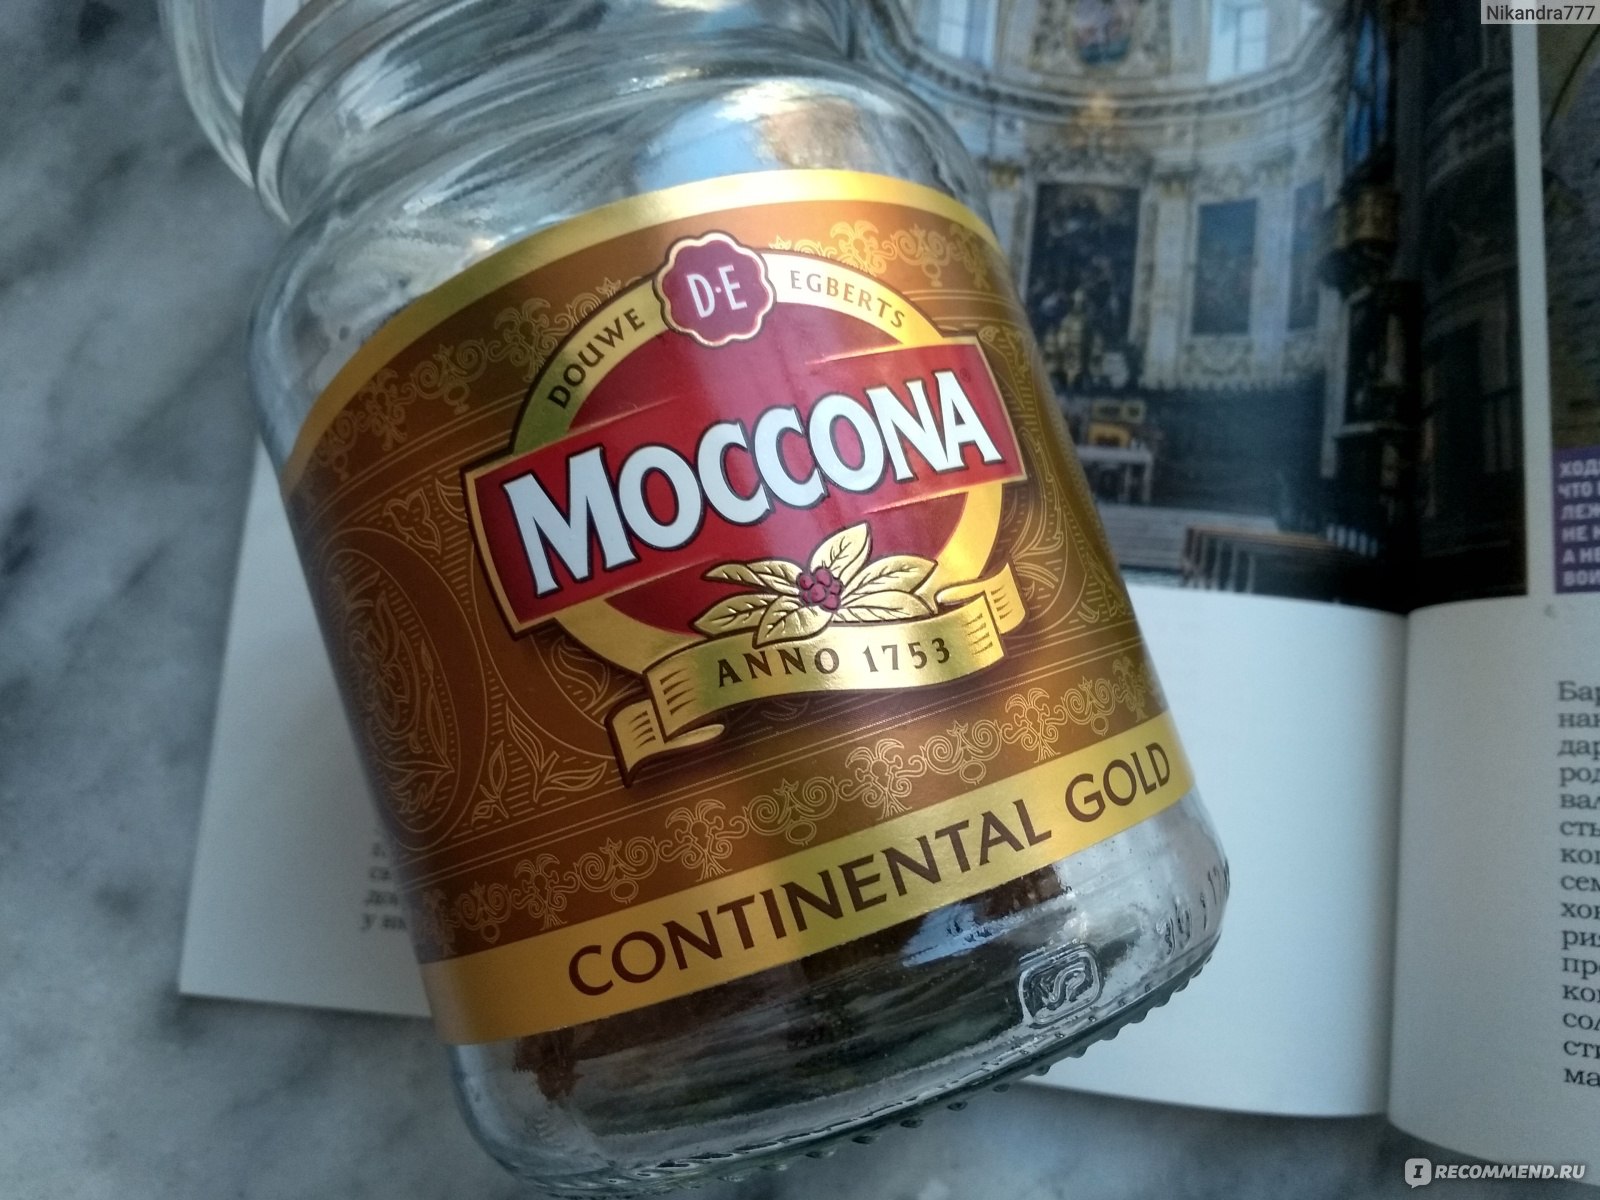 Moccona continental gold. Moccona лого. Кружки Moccona. Moccona Caramel.